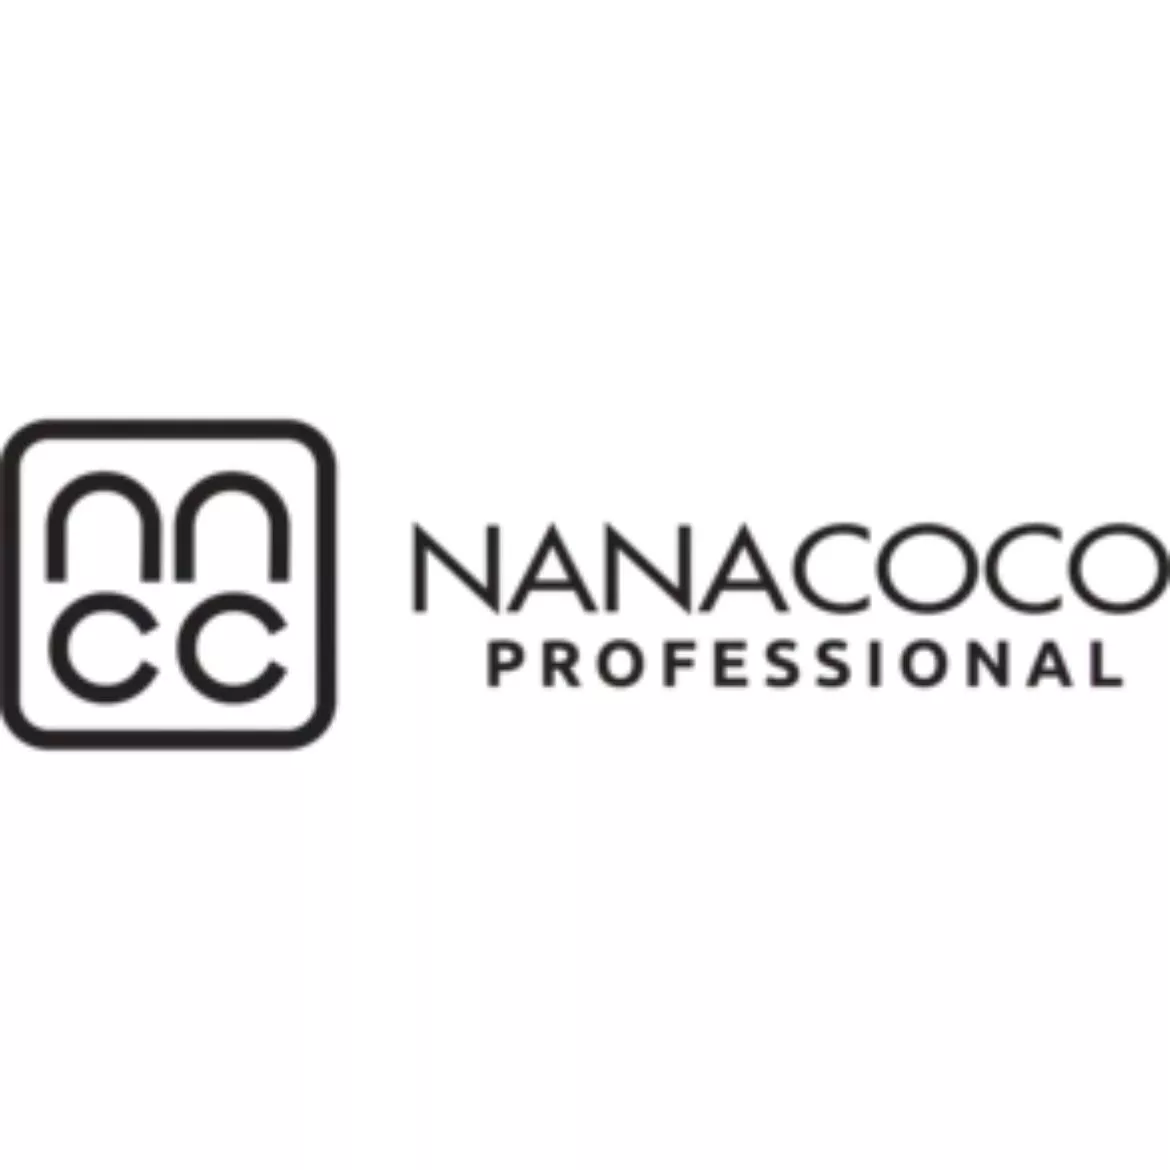 Nanacoco